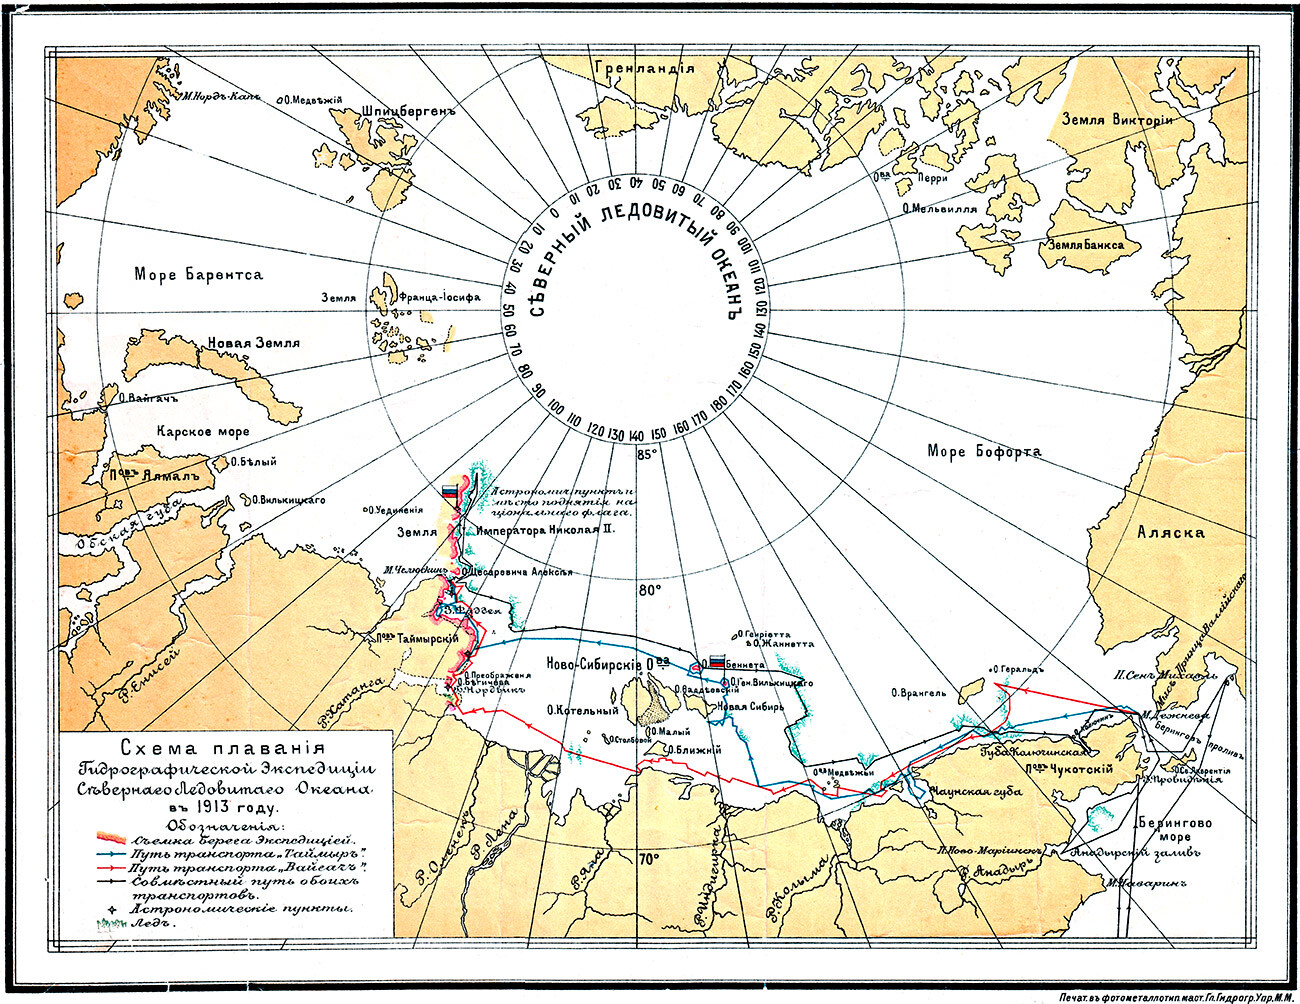 La rotta del viaggio della Spedizione nell'Oceano Artico, nel 1913
